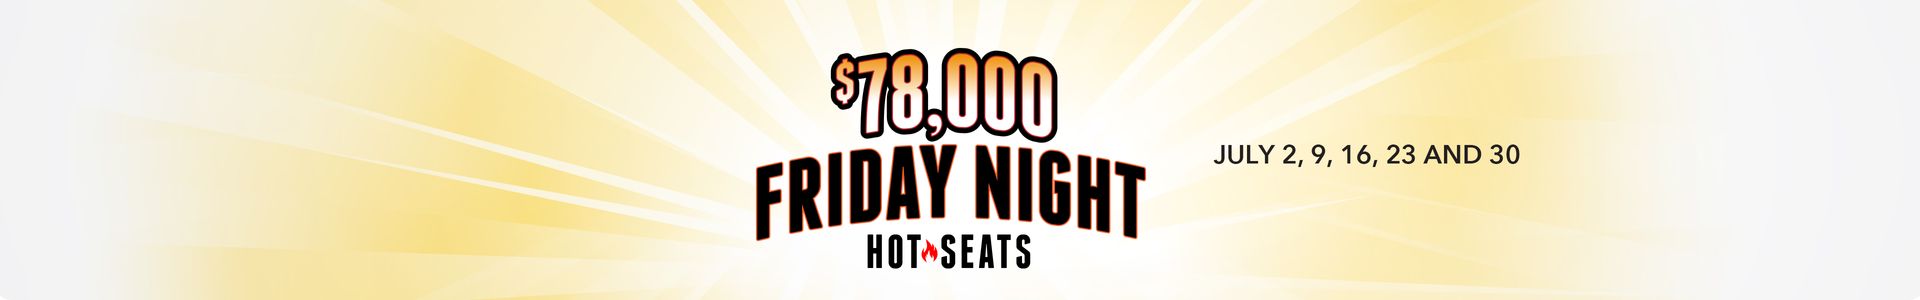 $78,000 Friday Night Hot Seats